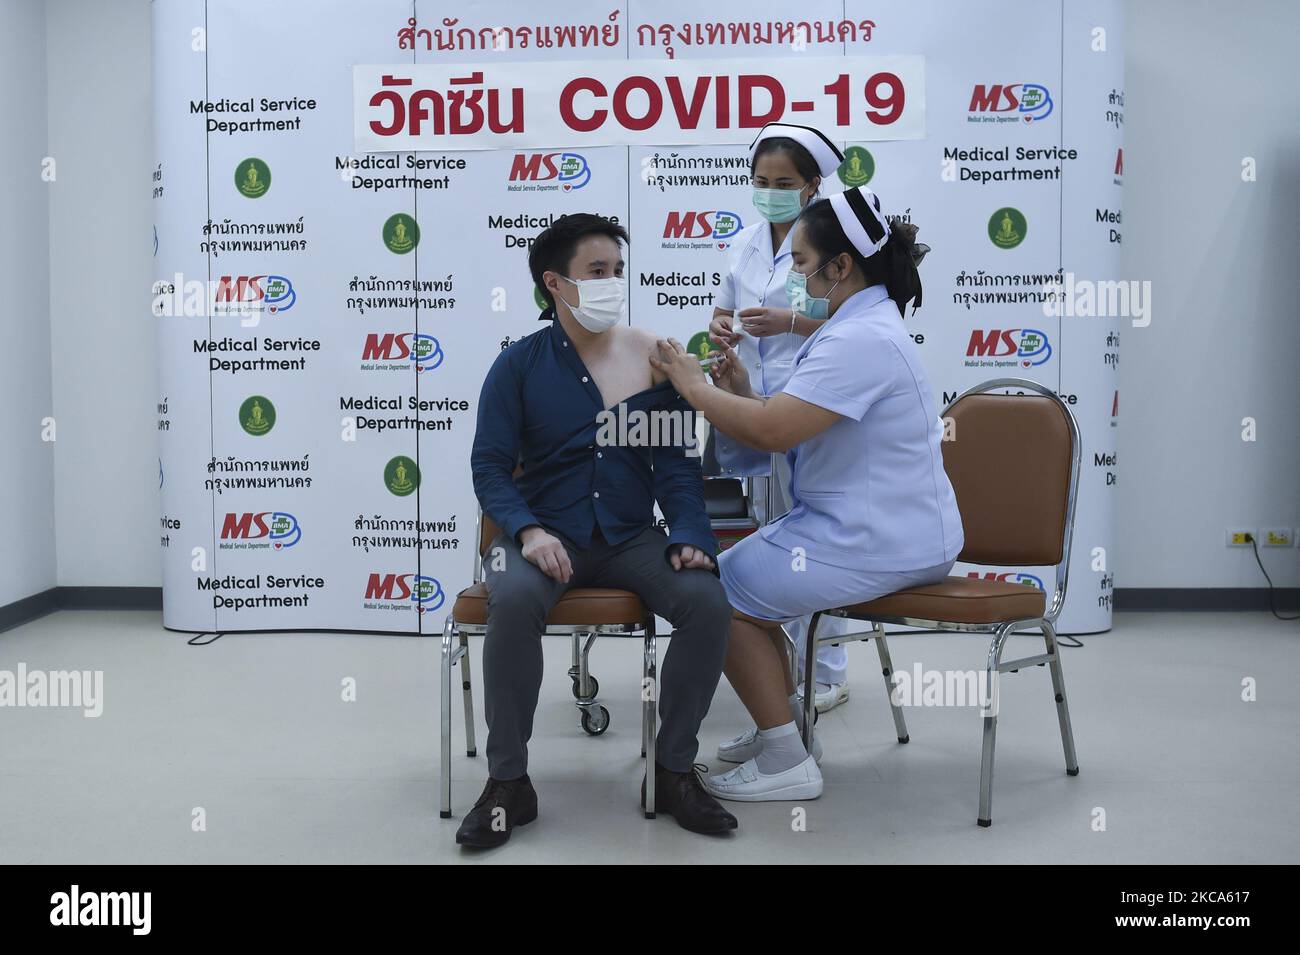 Il medico tailandese riceve un vaccino CoronaVac COVID-19, il primo giorno del programma nazionale di vaccinazione contro COVID-19 presso l'ospedale geriatrico Bang Khun Thian di Bangkok, Thailandia, 01 marzo 2021. (Foto di Anusak Laowilas/NurPhoto) Foto Stock